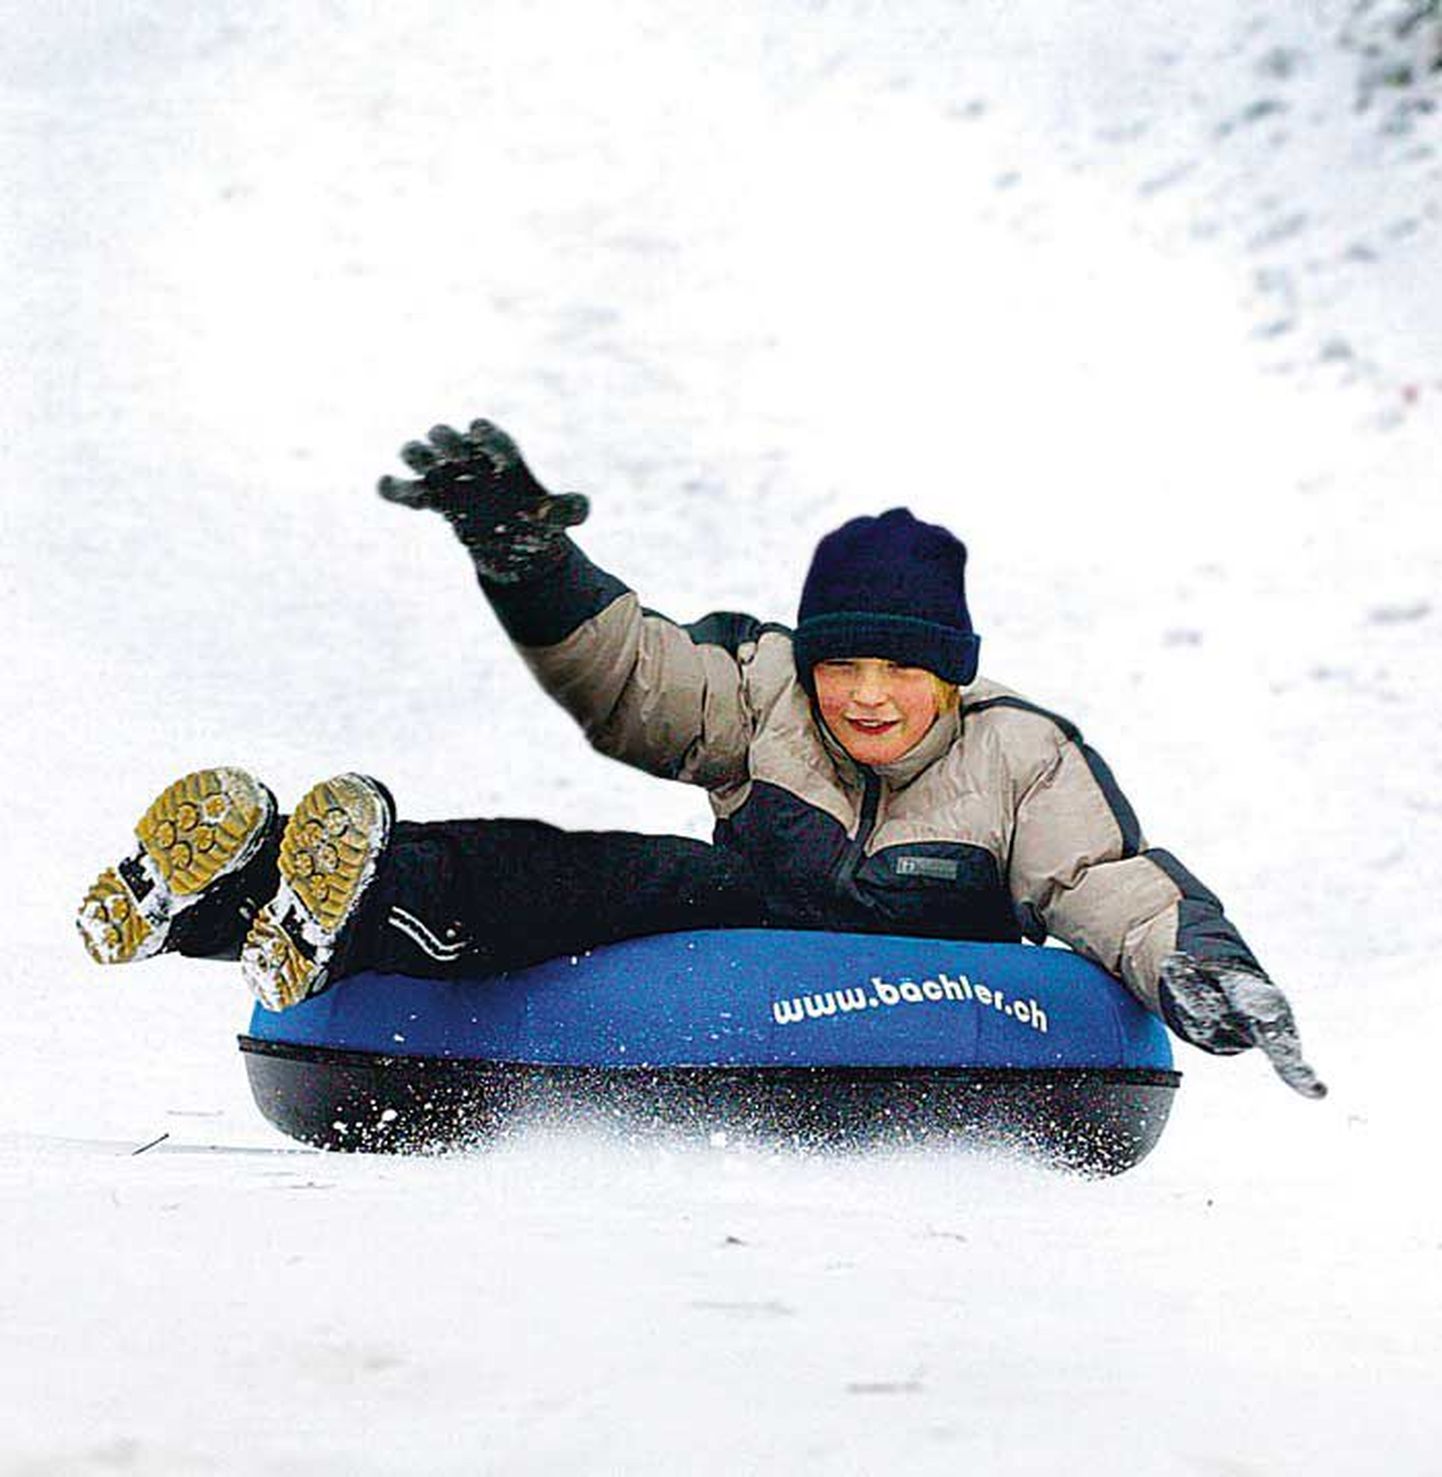 Laps snowtube rõngaga mäest alla sõitmas.